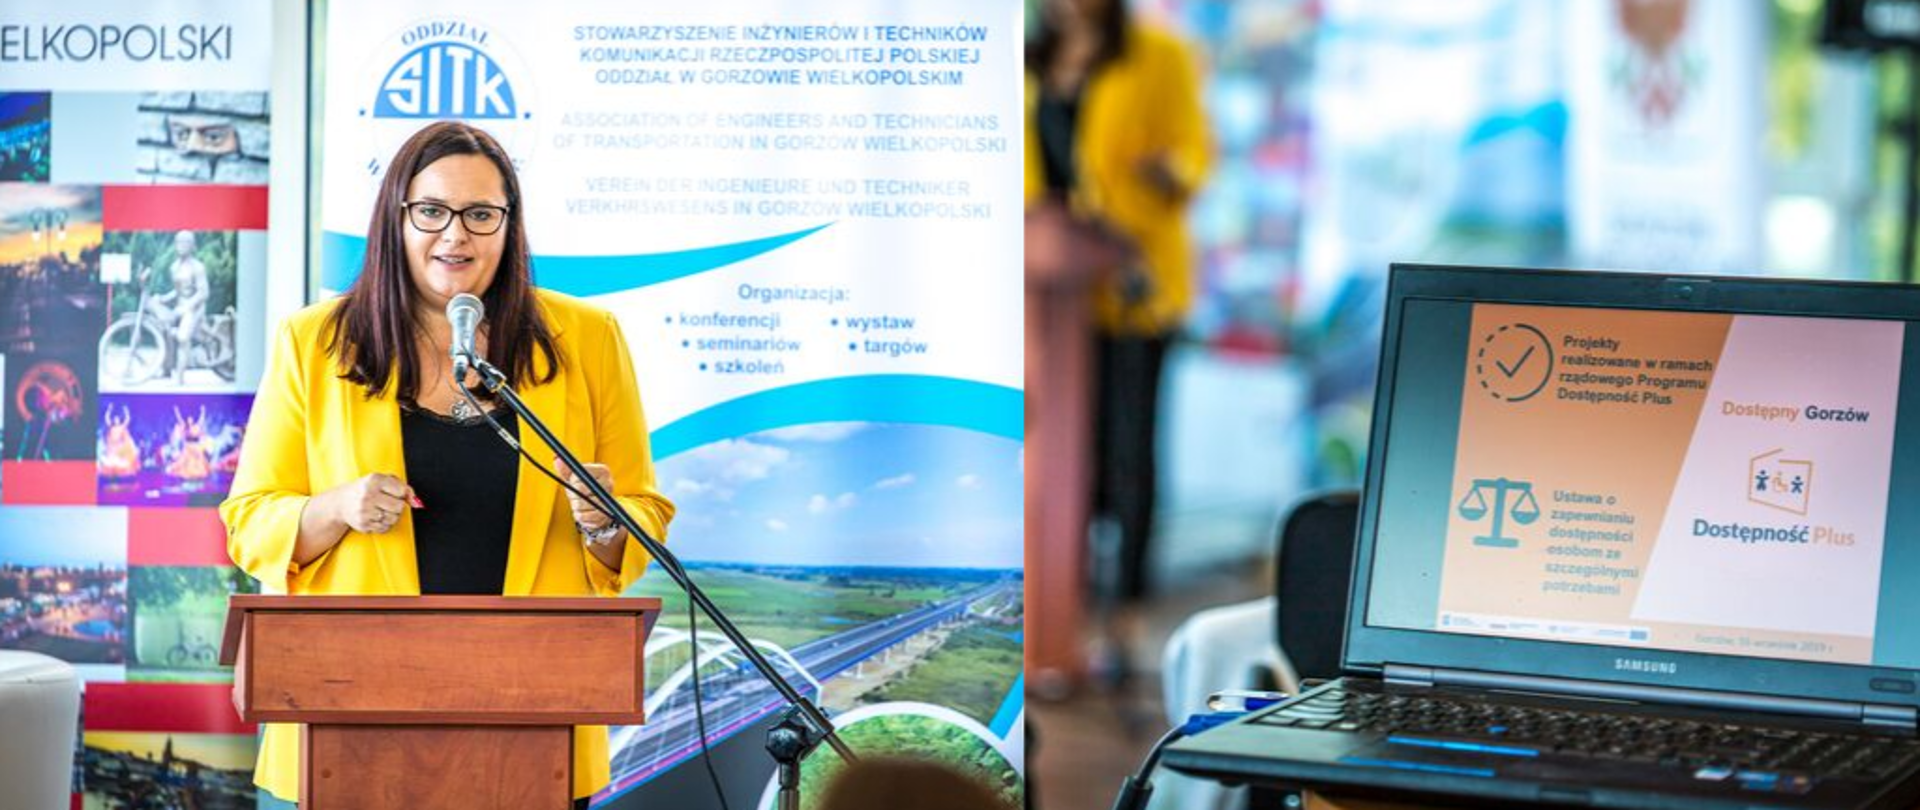 Po prawej zdjęcie minister Jarosińskiej-Jedynak, która stoi przy mównicy, po drugiej zdjęcie laptop na którym wyśiwtlony jest napis "Dostępny Gorzów", "Dostępność Plus"